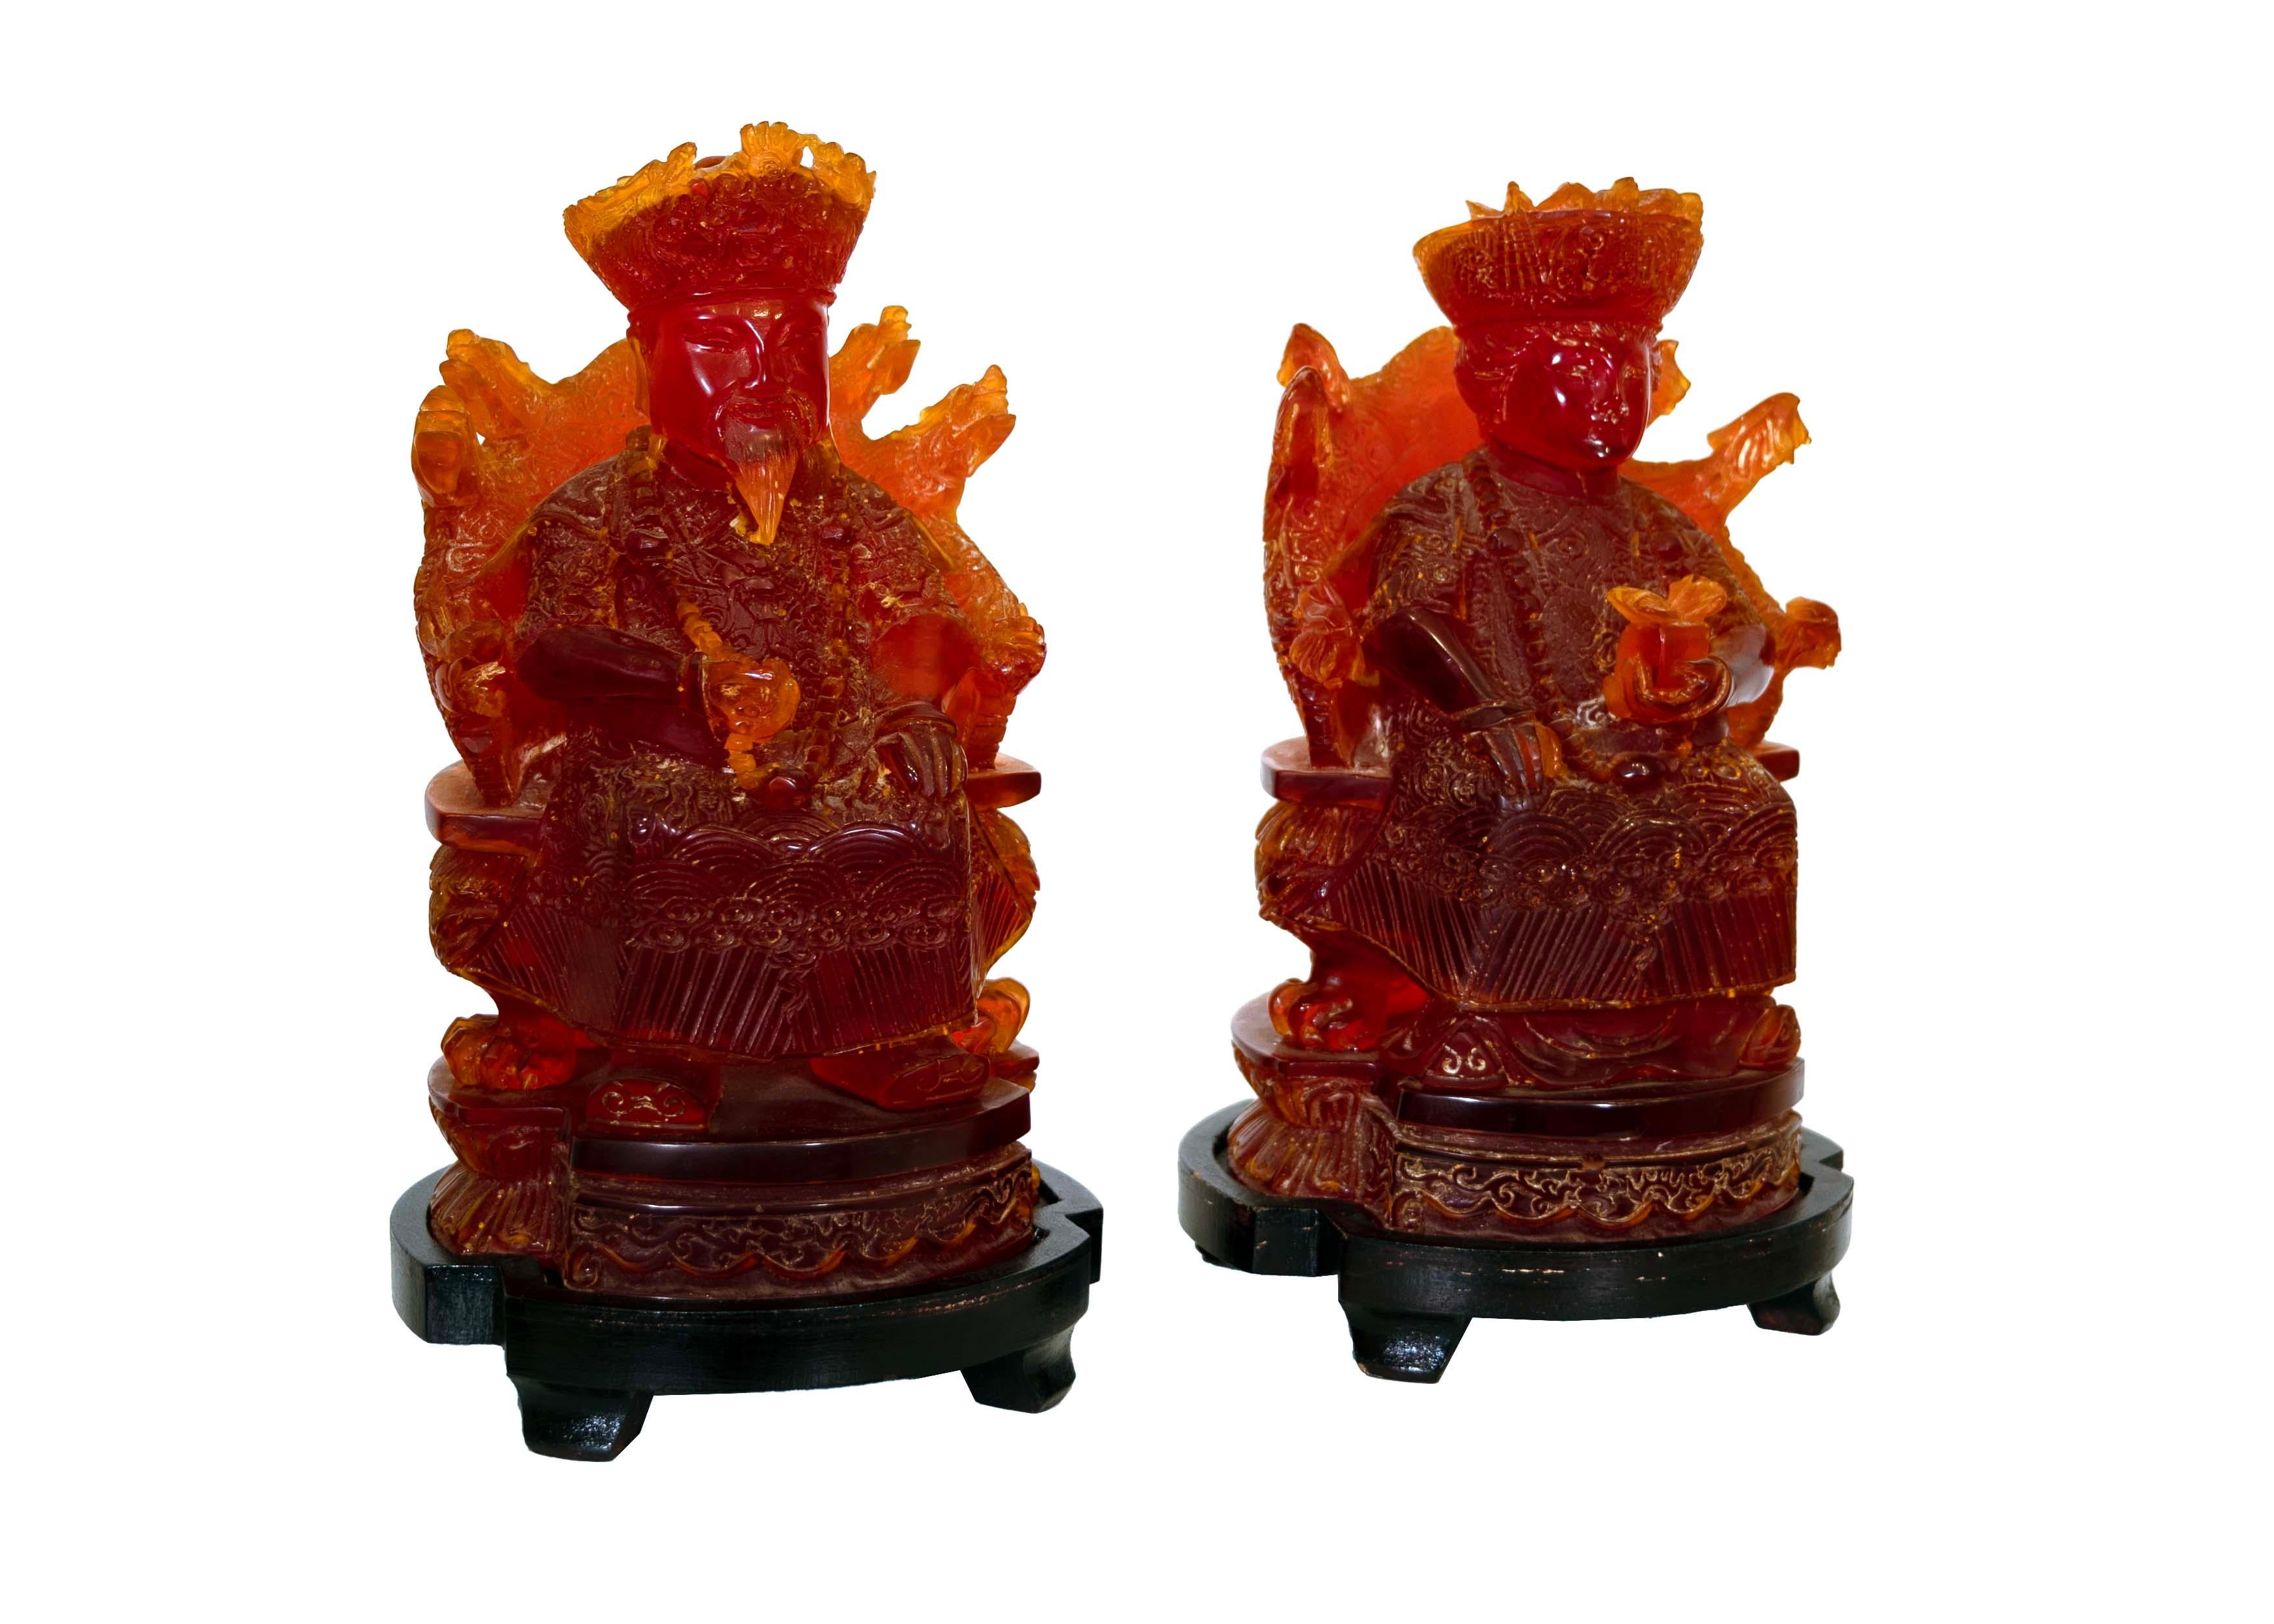 Plongez dans la grandeur de la Chine impériale avec cette captivante paire de figurines assises, magistralement réalisées en résine de cerisier. Ornées de sculptures complexes représentant les vêtements opulents et l'allure royale d'un empereur et